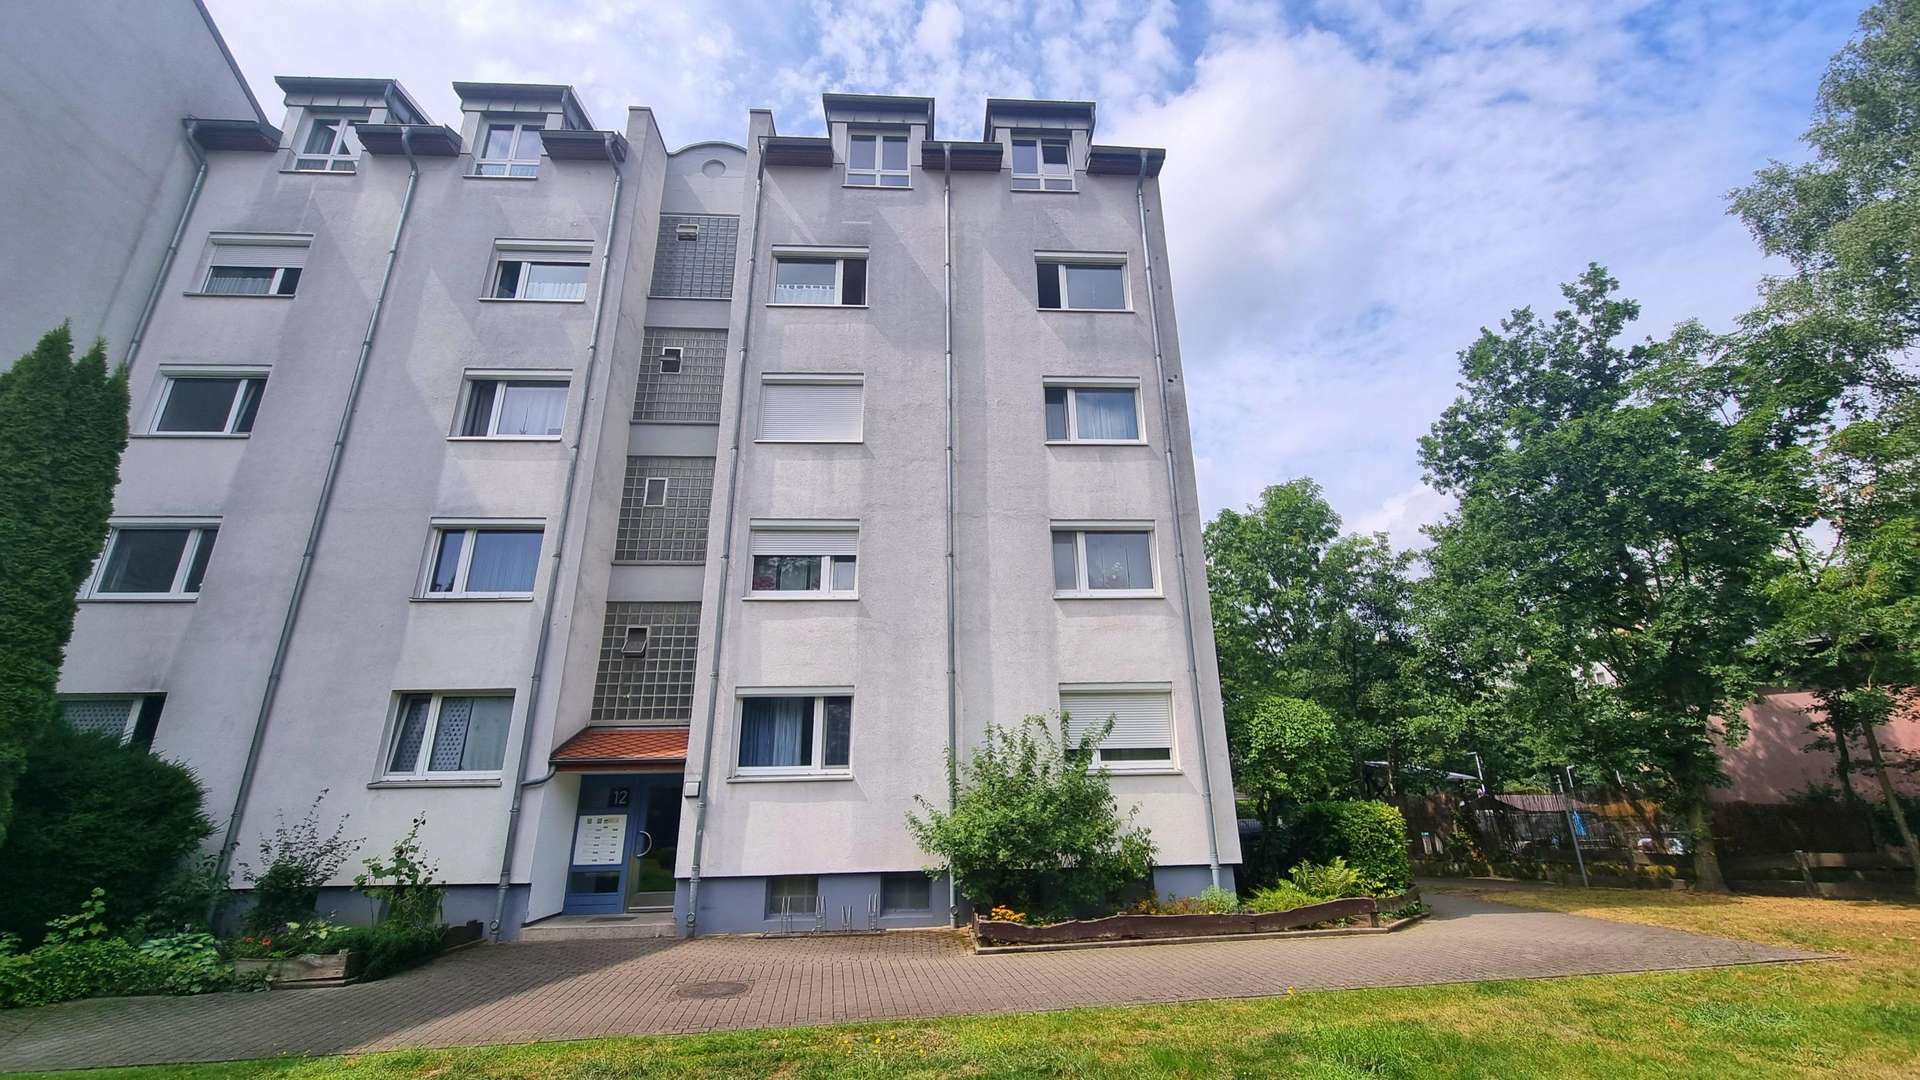 Front - Erdgeschosswohnung in 28259 Bremen mit 73m² günstig kaufen